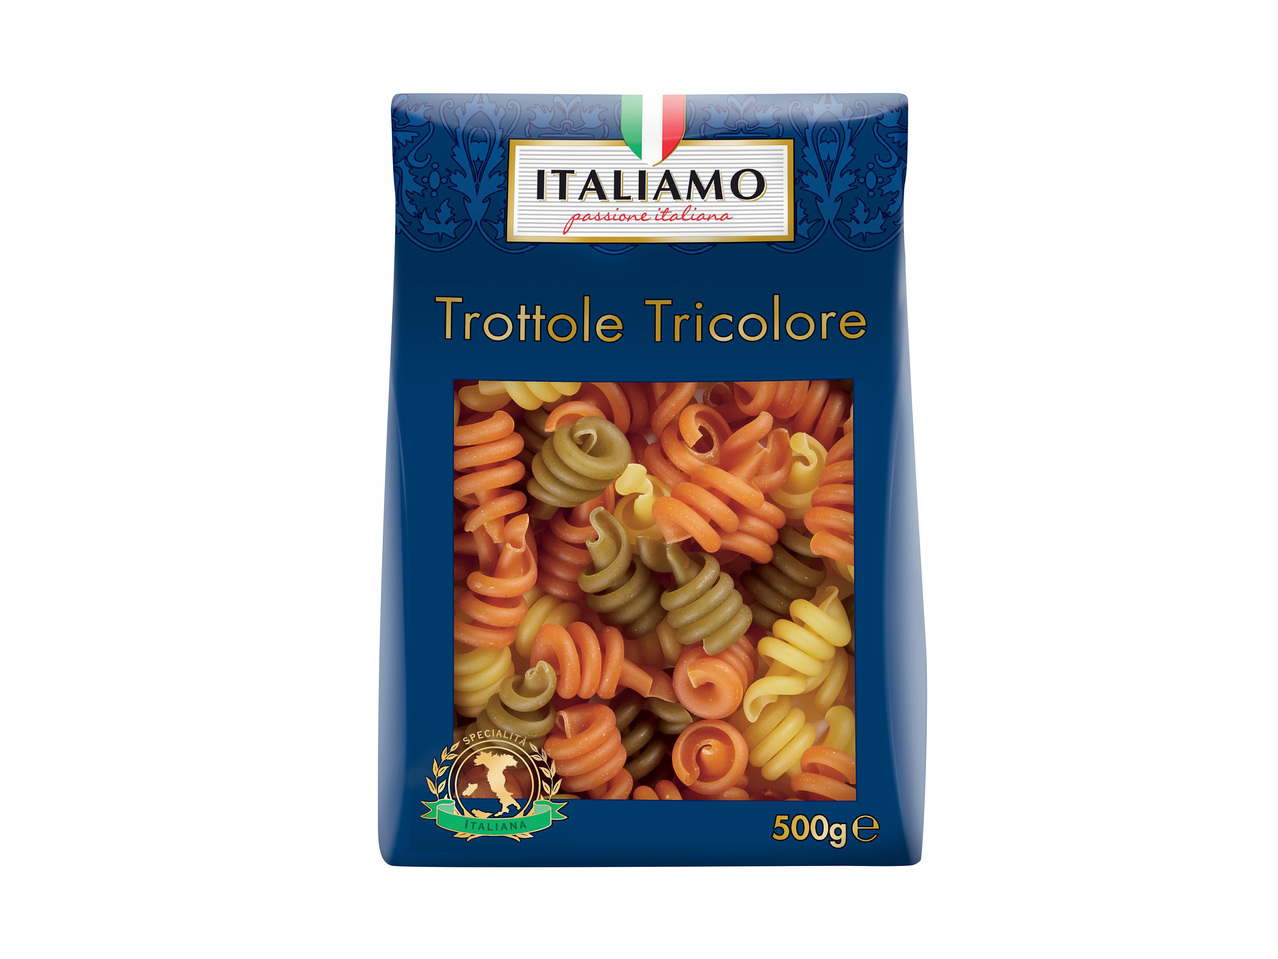 Spaghetti ou trottole tricolore1